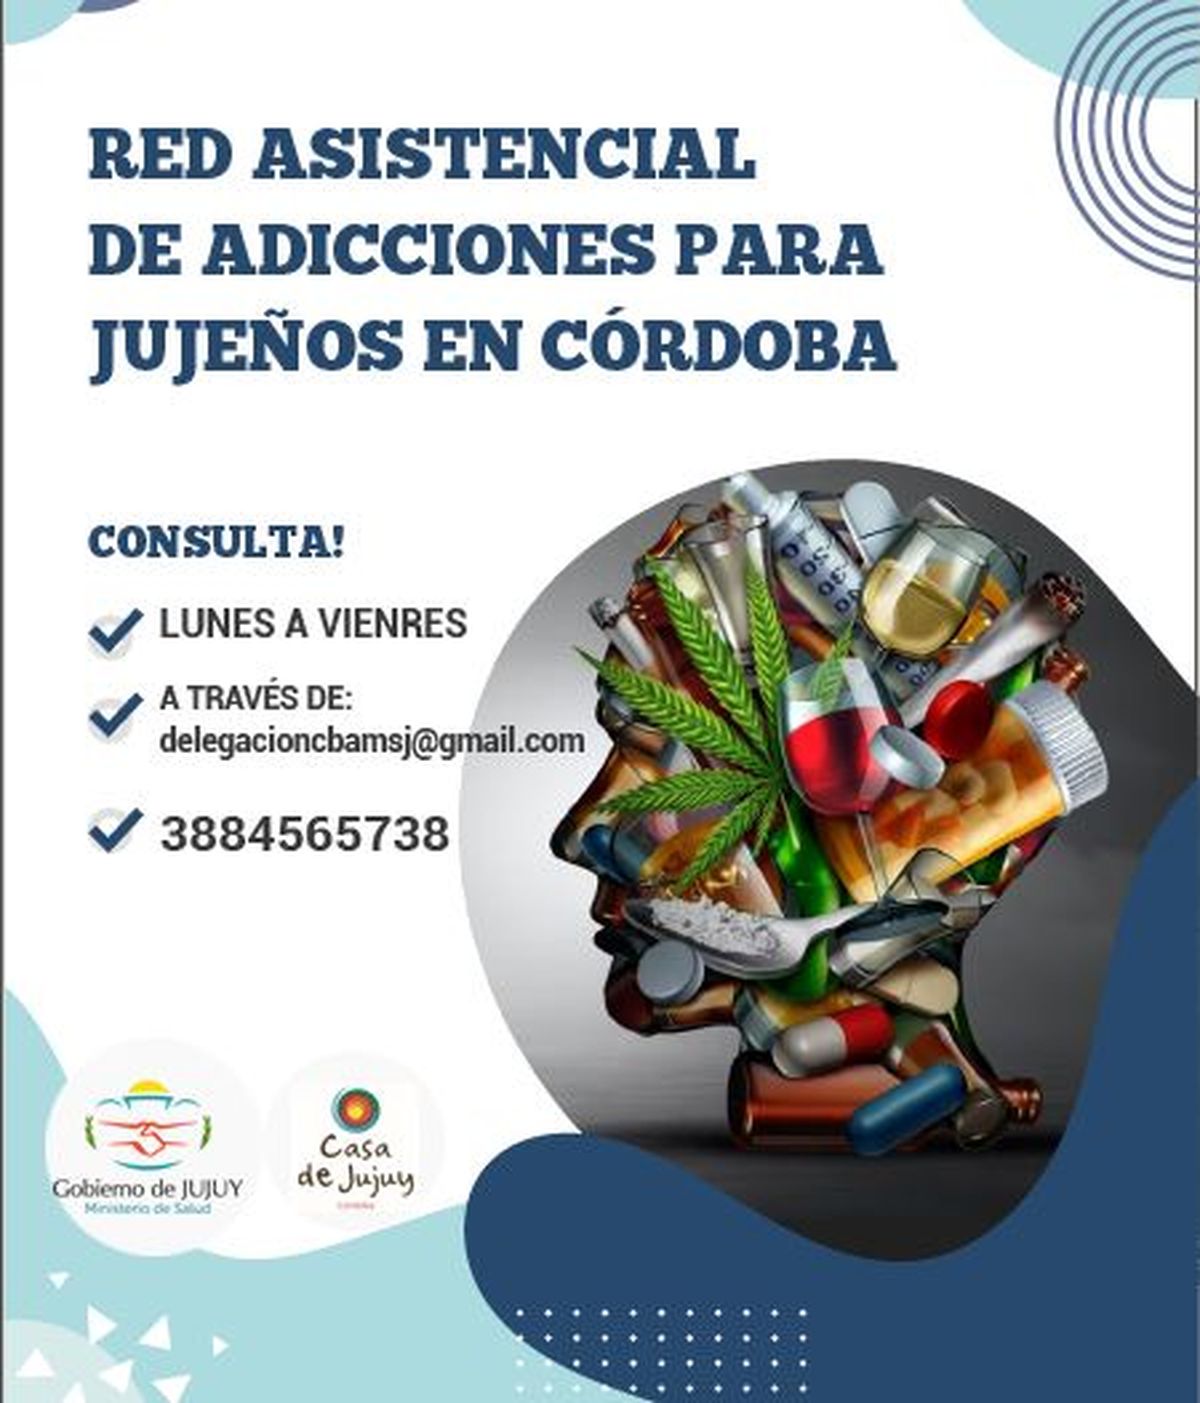 Intensifican trabajos de la Red Asistencial de Adicciones para Jujeños en Córdoba